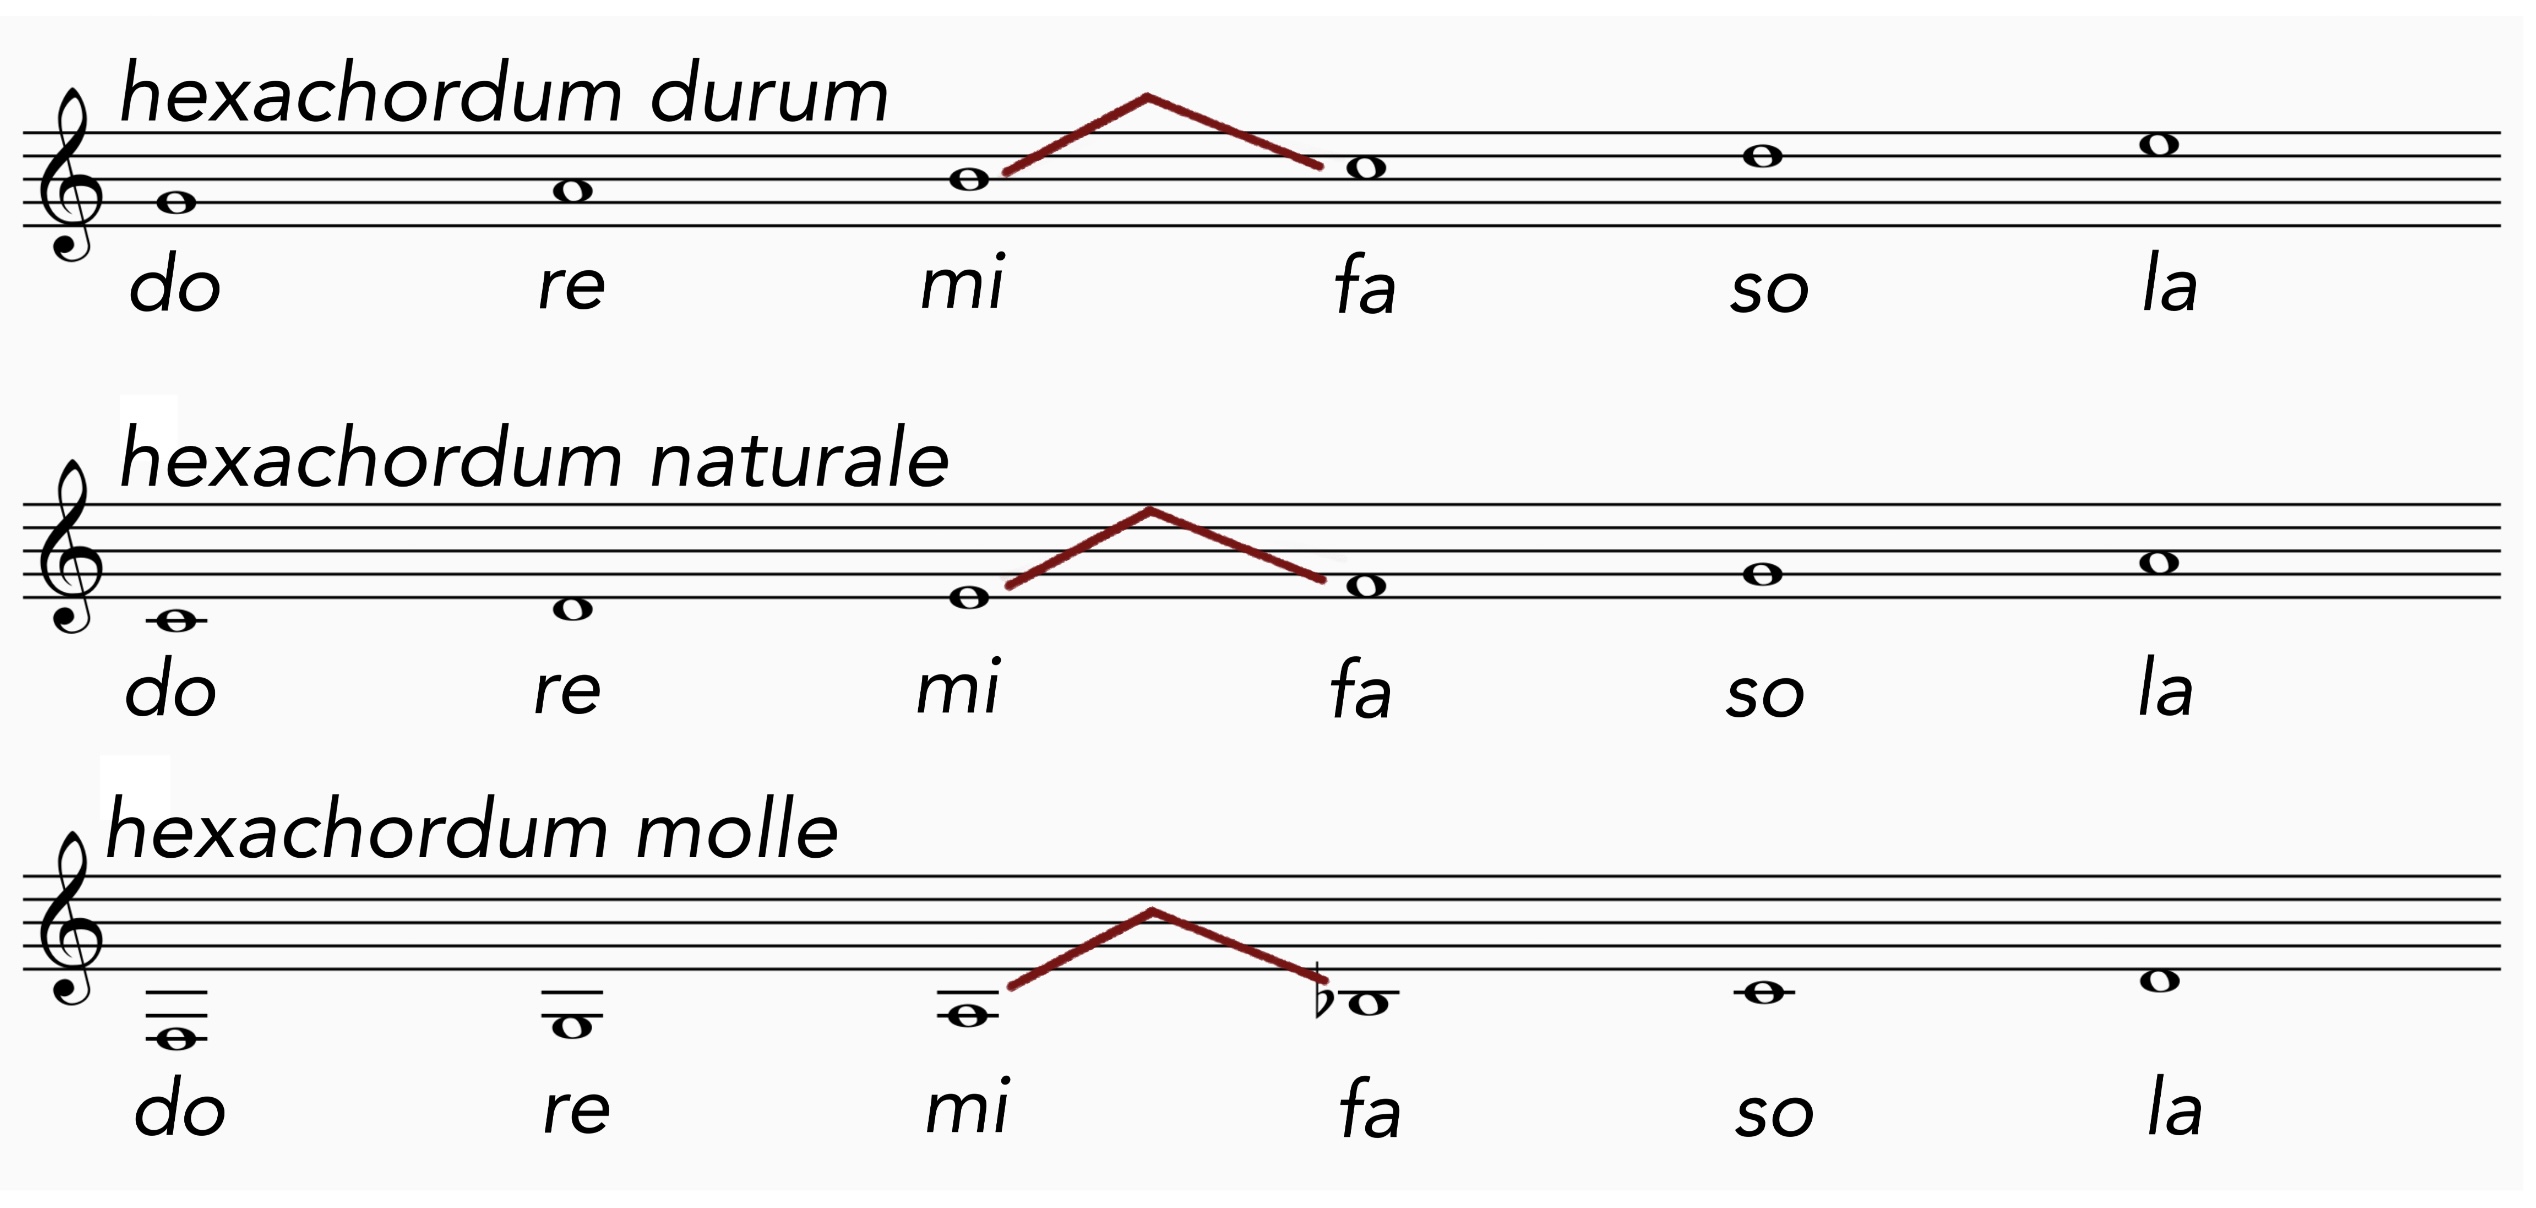 Mit den drei Hexachorden naturale, durum, molle,waren alle Melodien durch Solmisieren darstellbar.